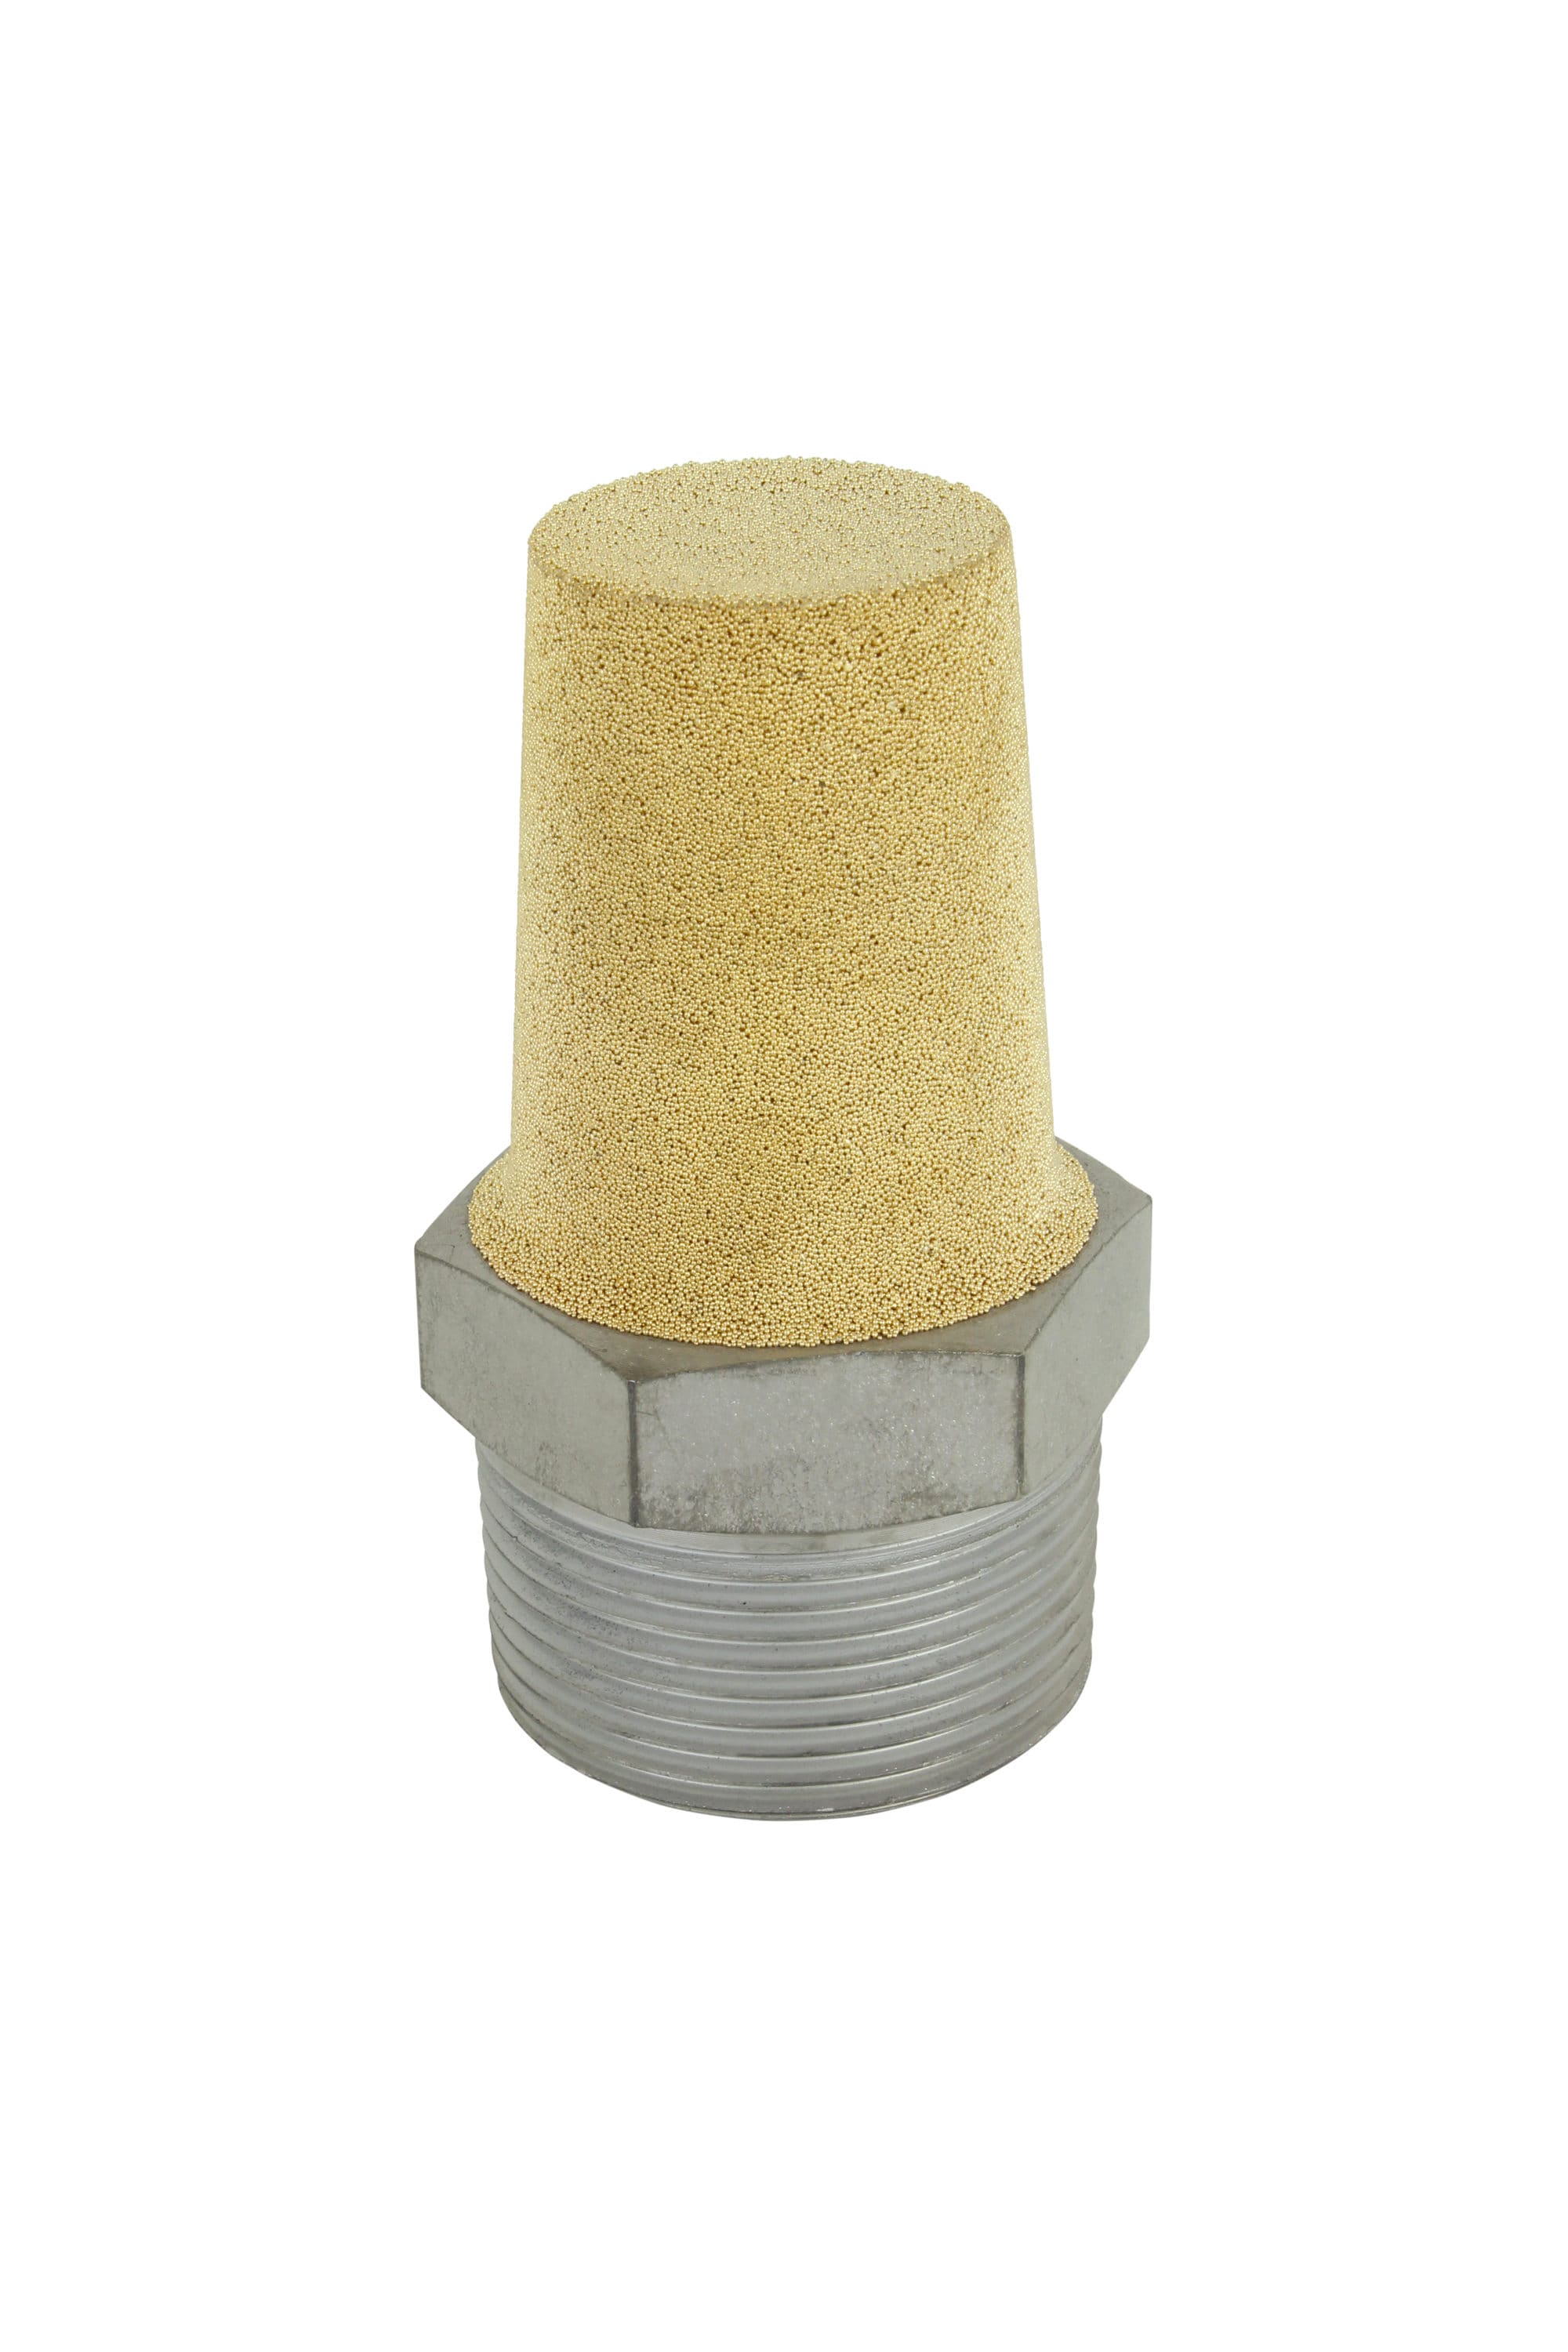 Brand New 1 Set Brass Pneumatic Muffler Cone Filter Silencer Sintered Fitting